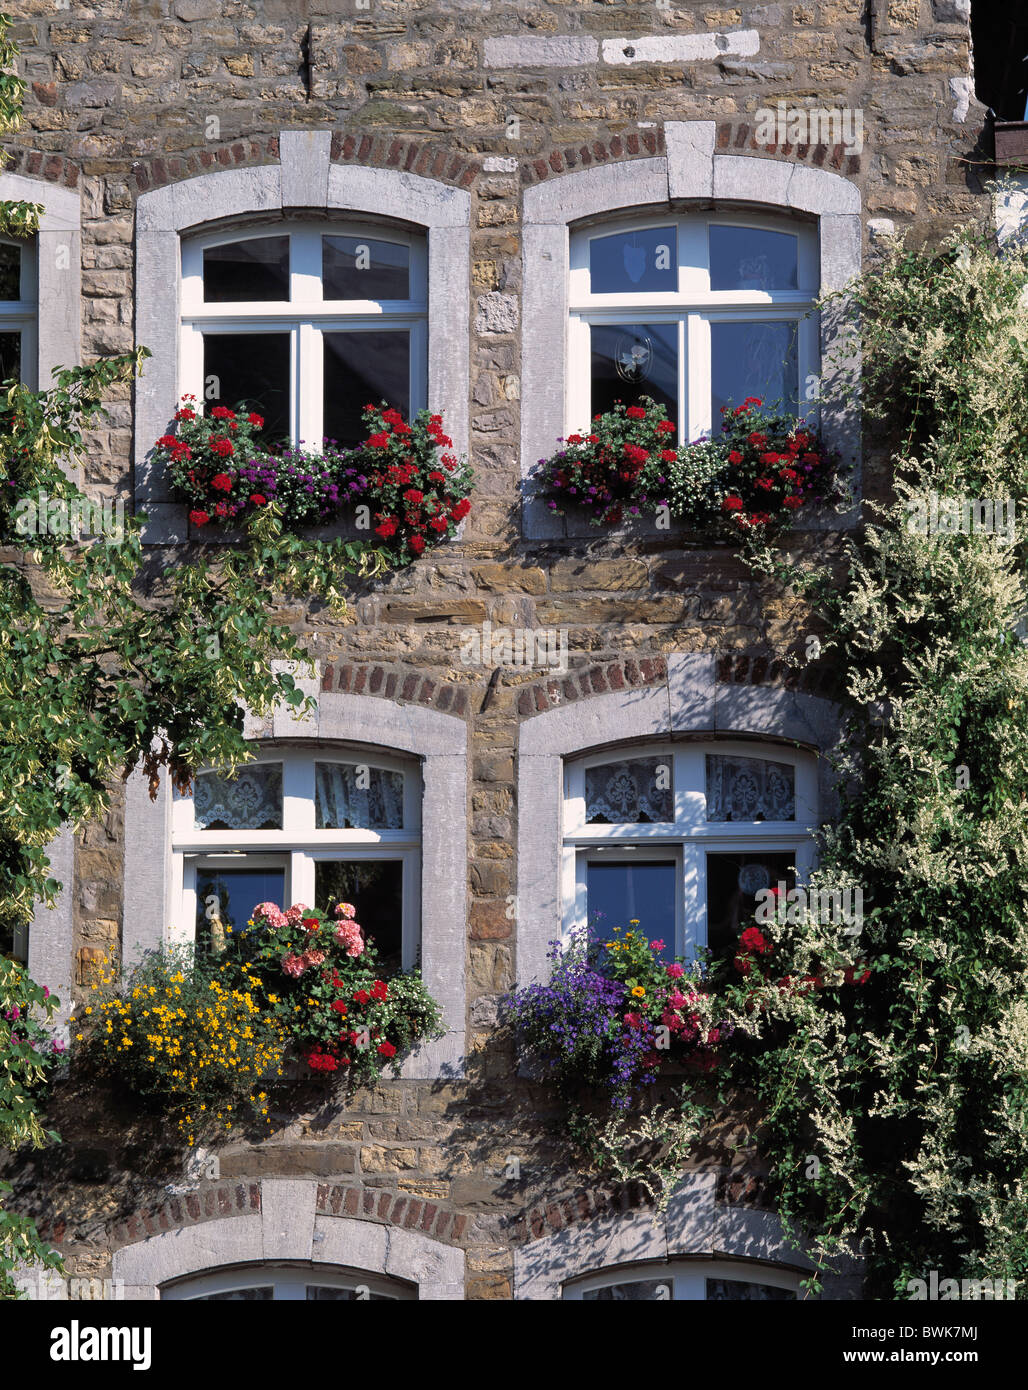 Blume-Fenster Fassade Blumen Blumendekoration Detail Fenster Bezirk  Kornelimunster Aachen-Kornelimunster Rhi Stockfotografie - Alamy